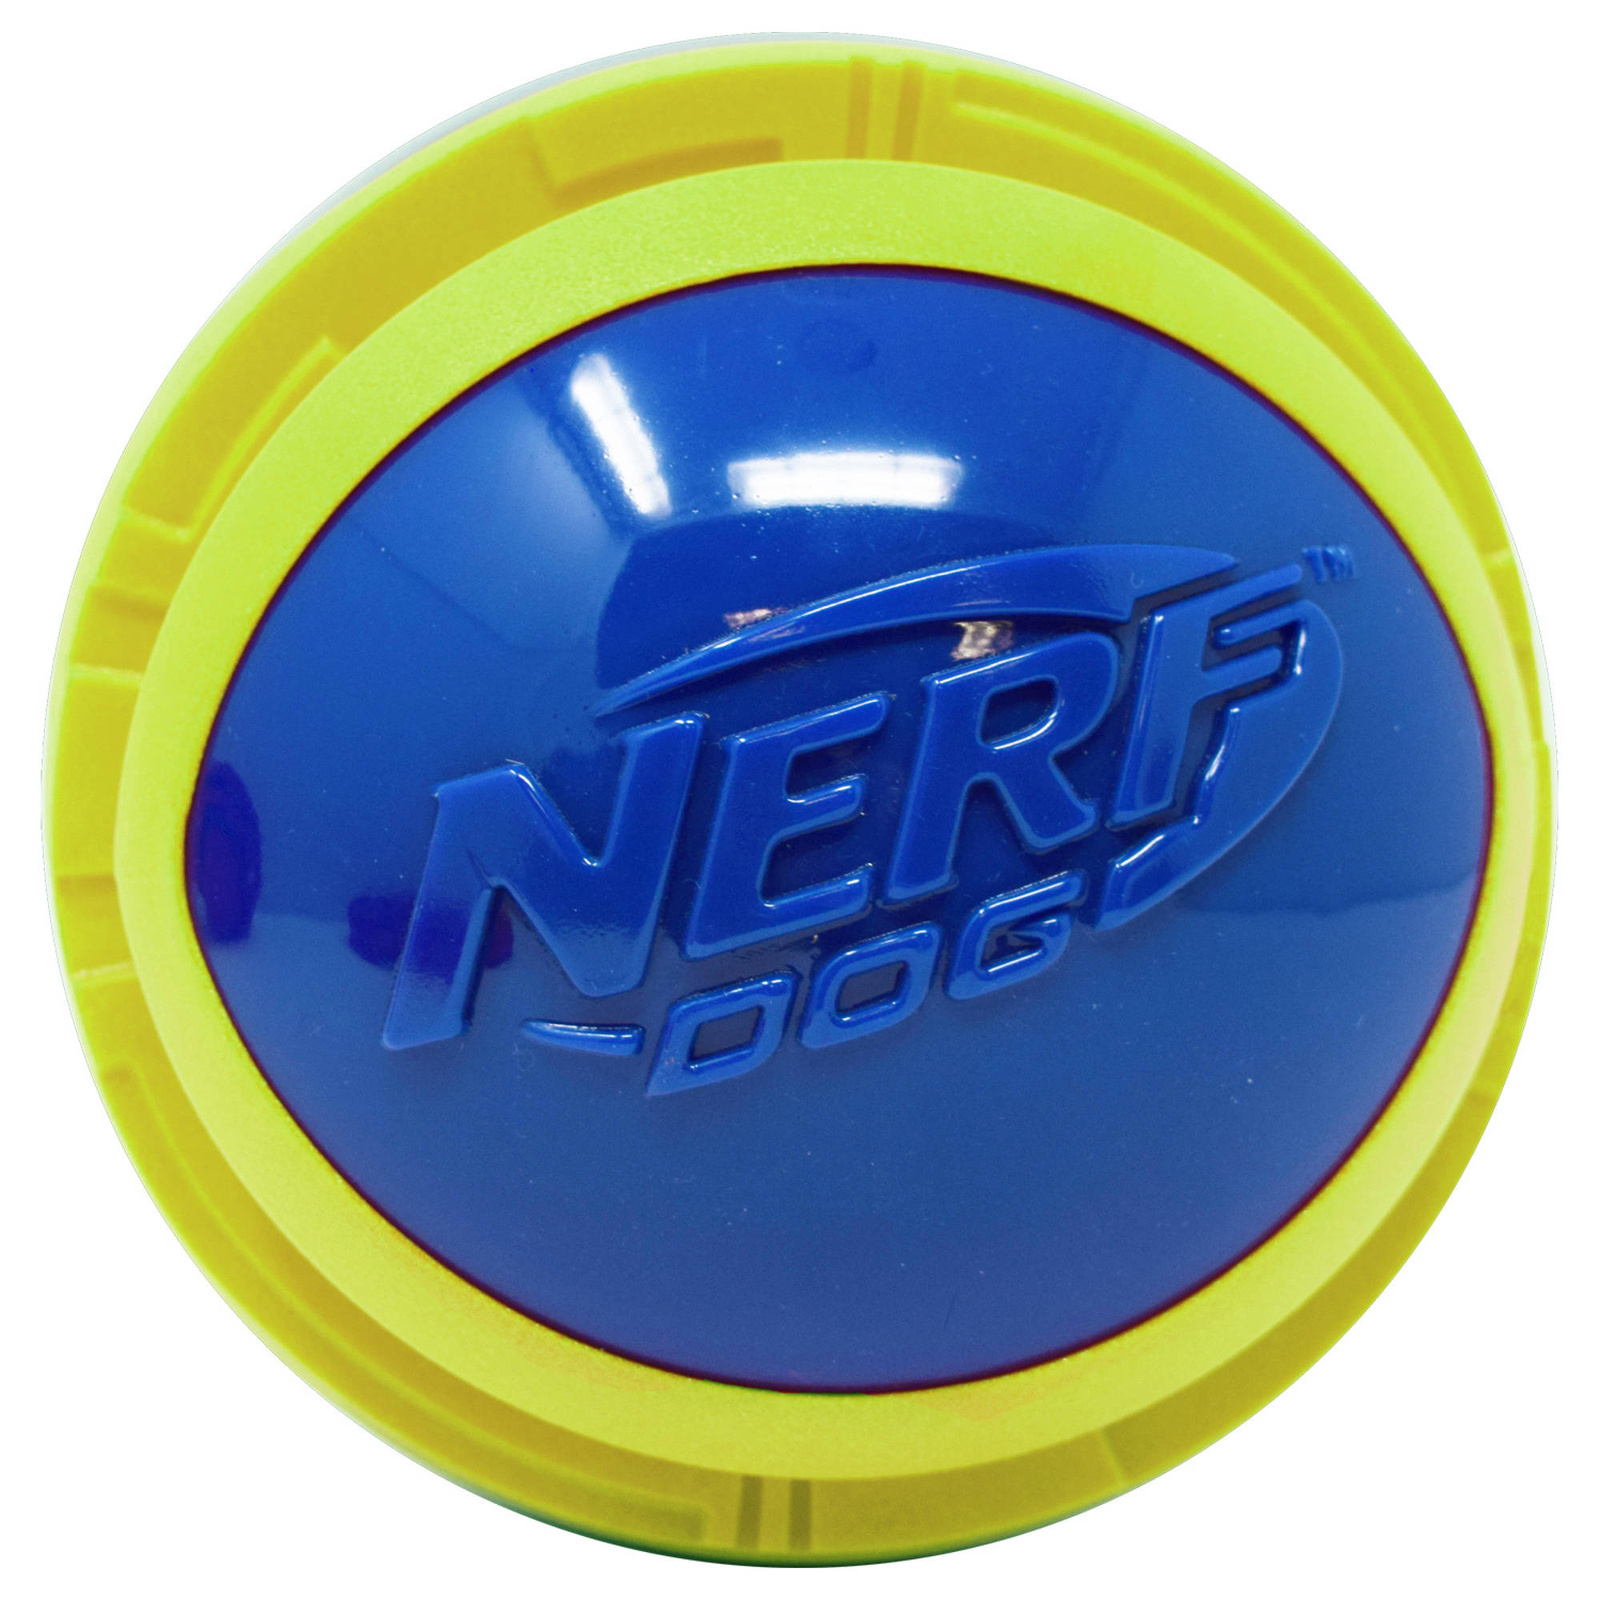 Nerf Nerf мяч из вспененной резины и термопластичной резины,14 см (серия Мегатон), (синий/зеленый) (390 г) nerf мегатон игрушка для собак мяч для регби из нейлона и вспененной резины оранжевый синий 18 см